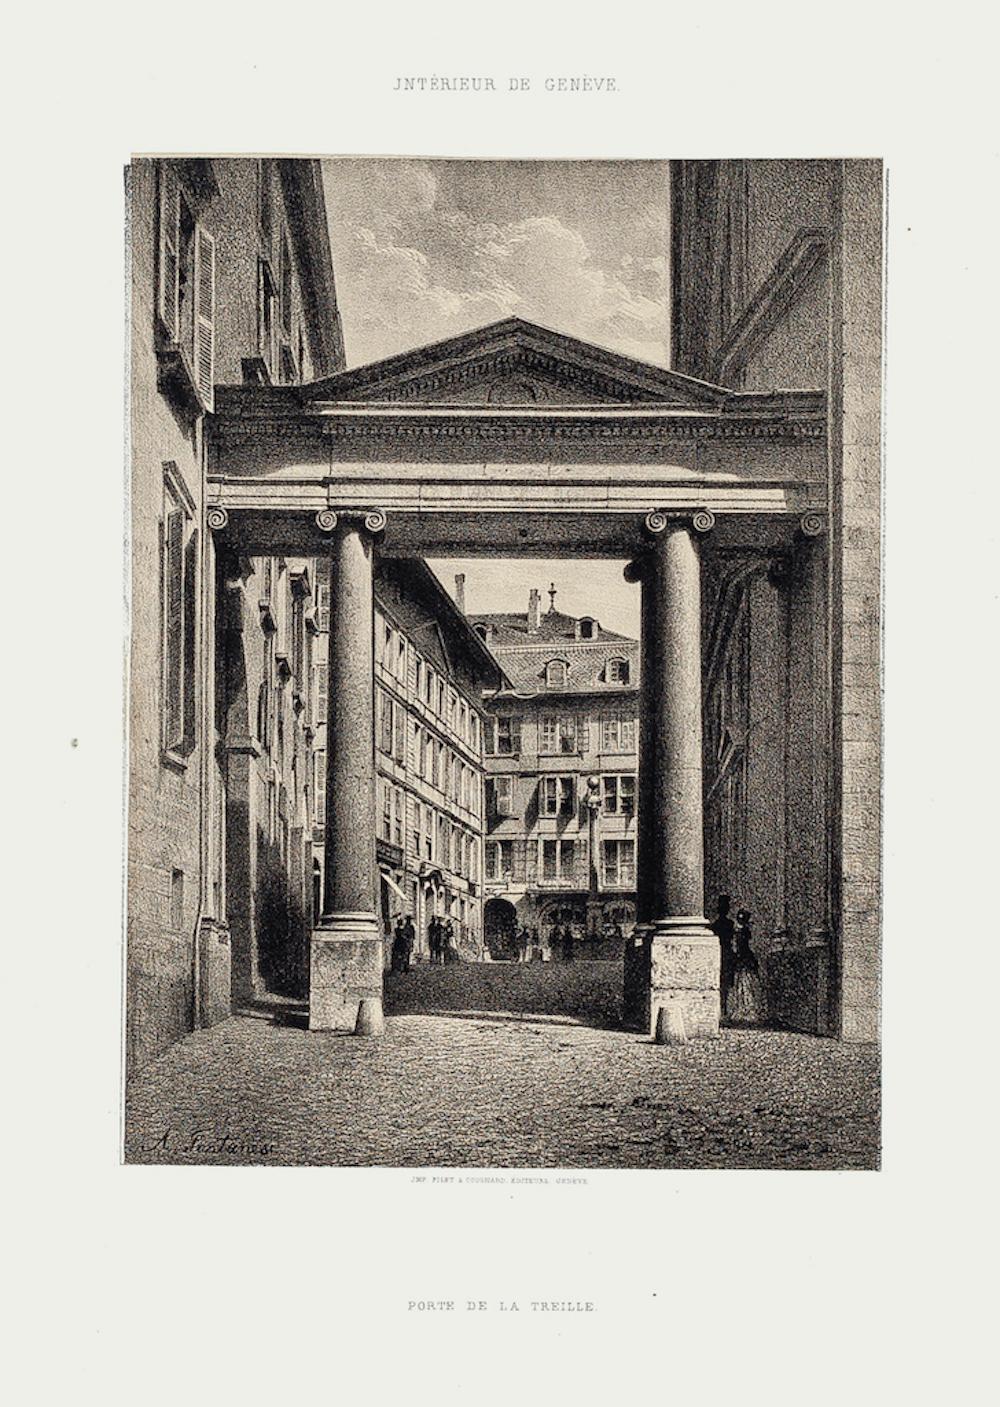 Geneva, Port de la Treille - Lithograph by A. Fontanesi - 1854 - Print by Antonio Fontanesi